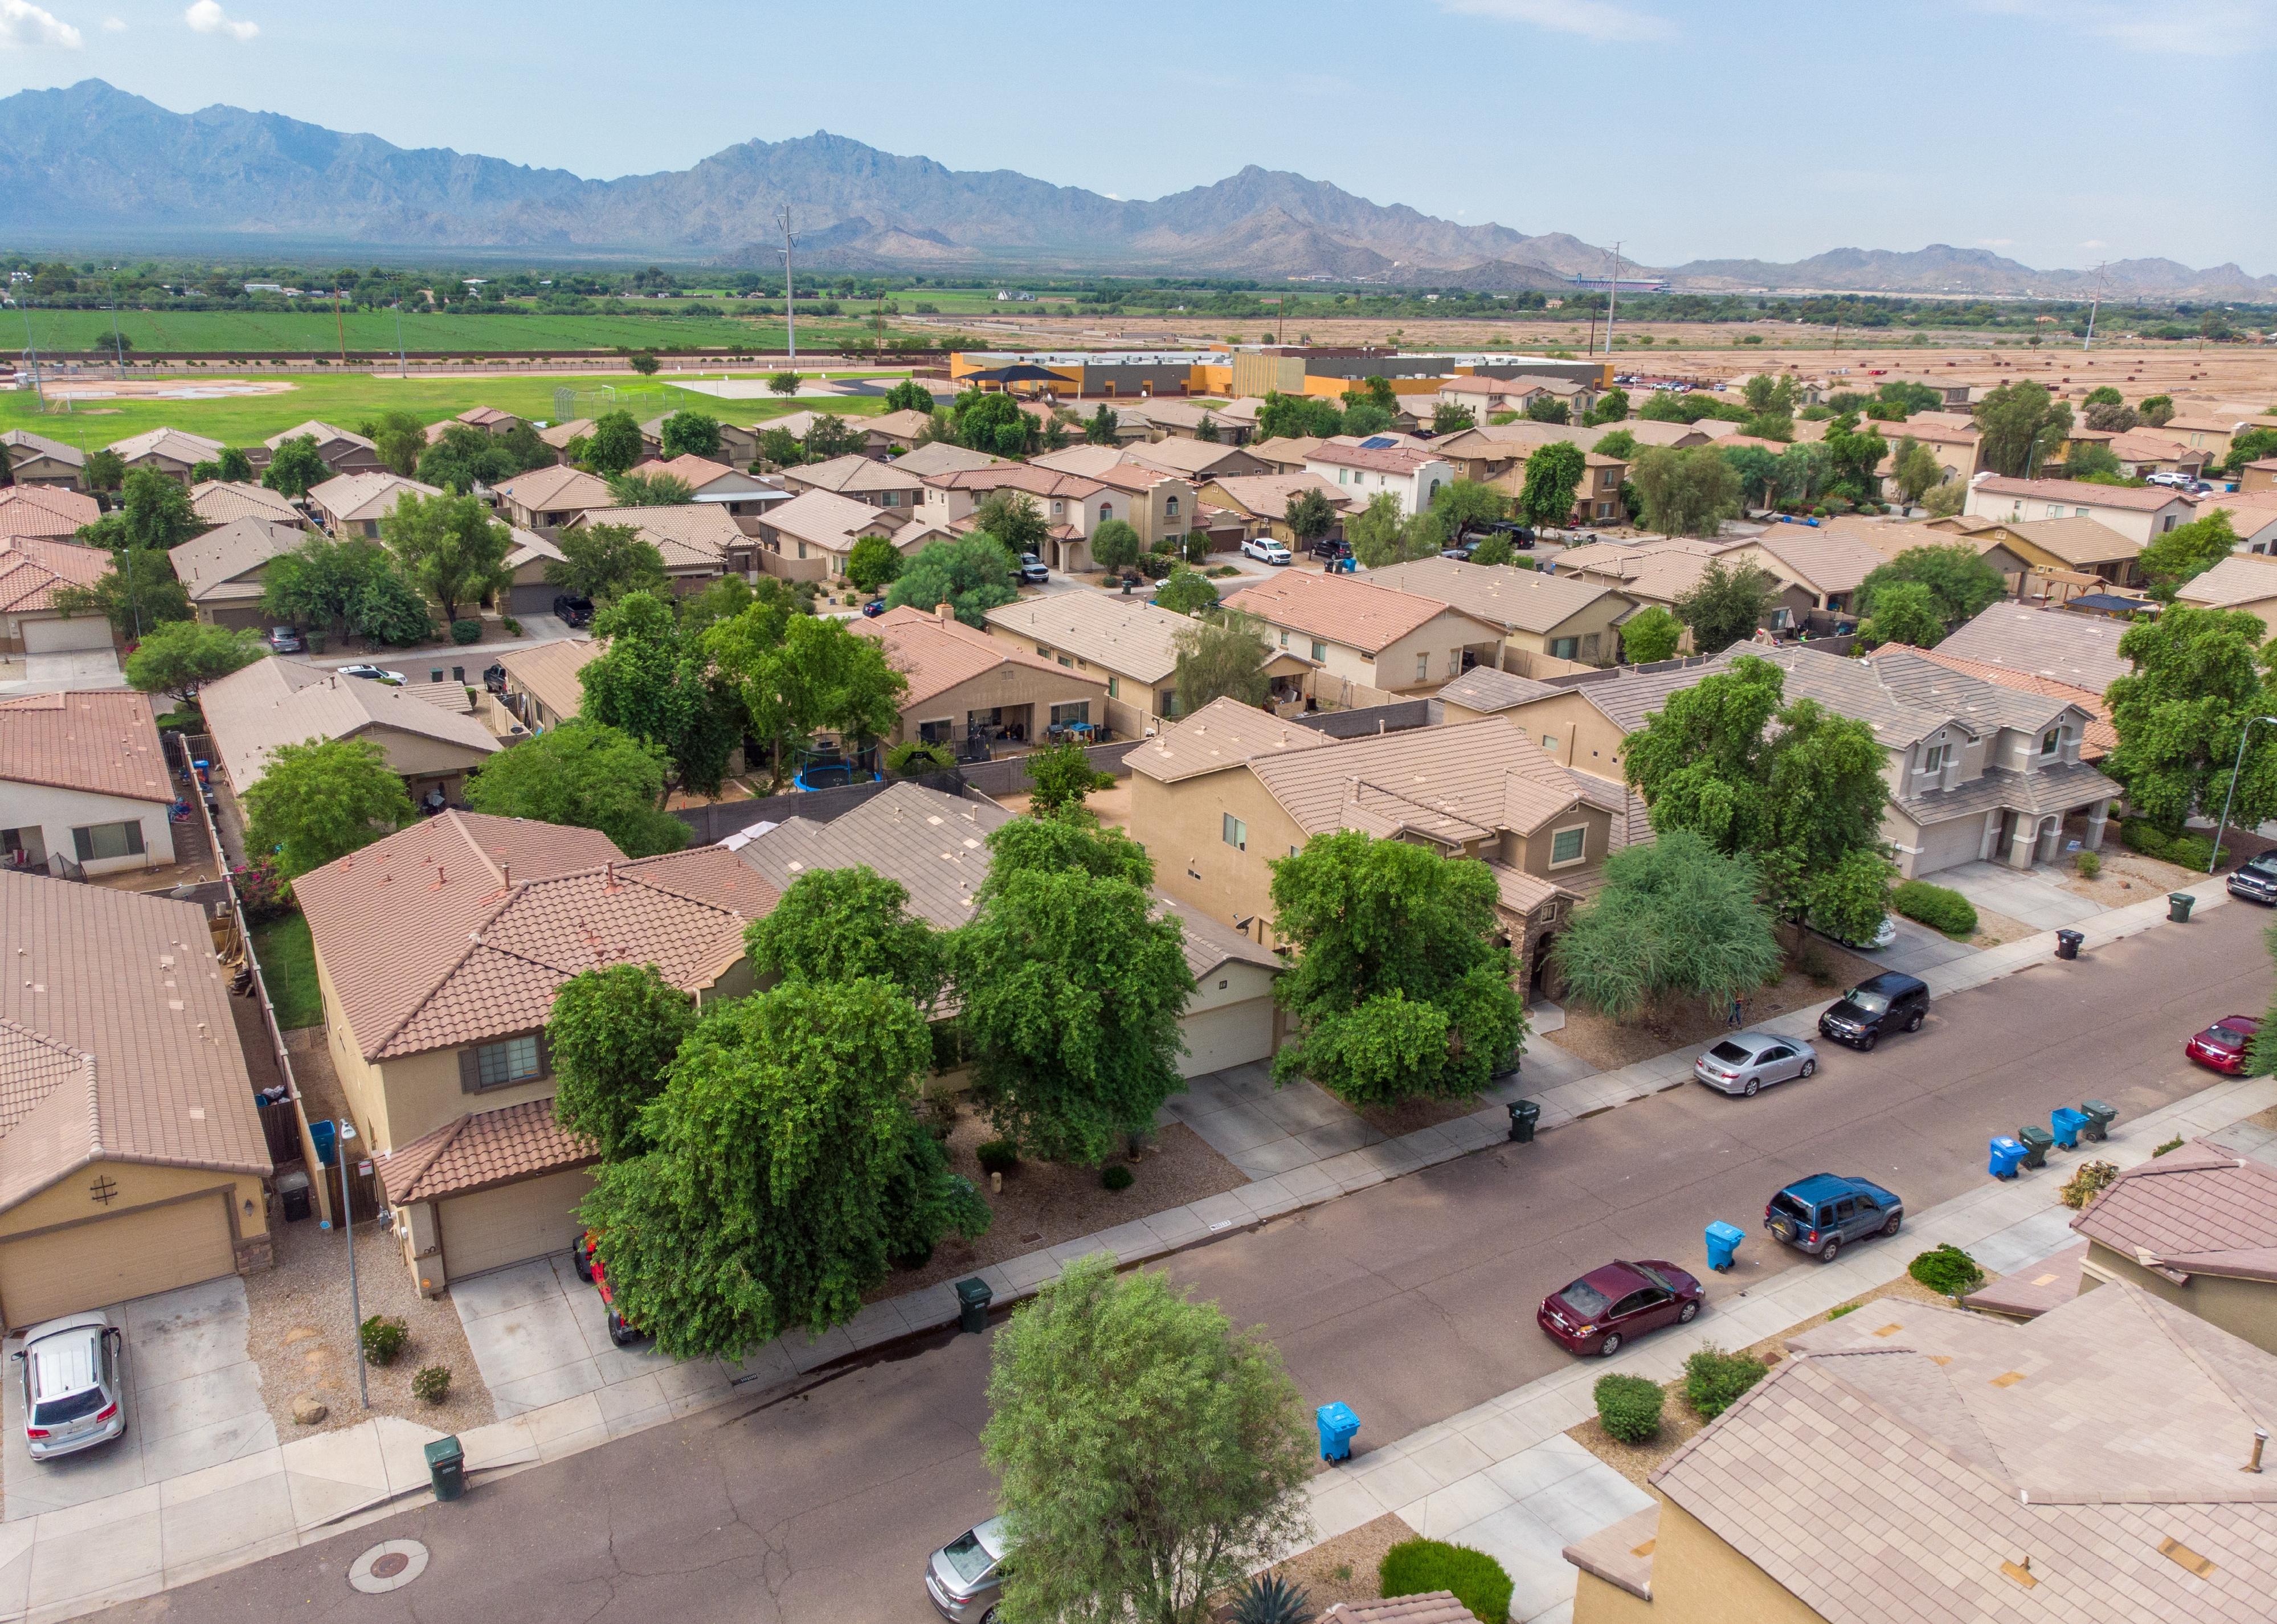 Aerial of a neighborhood in Phoenix.